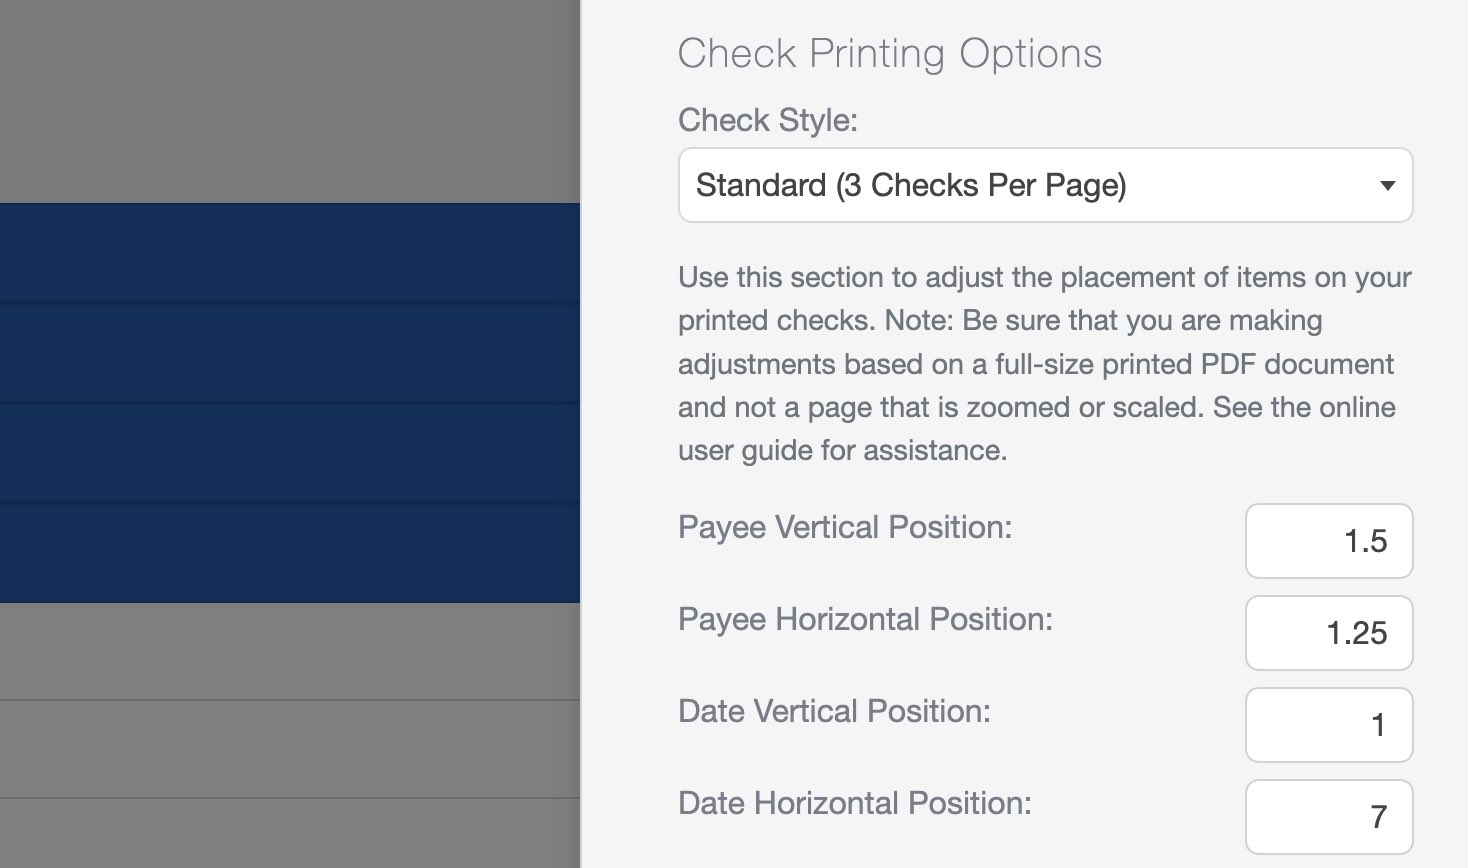 Check Printing Options